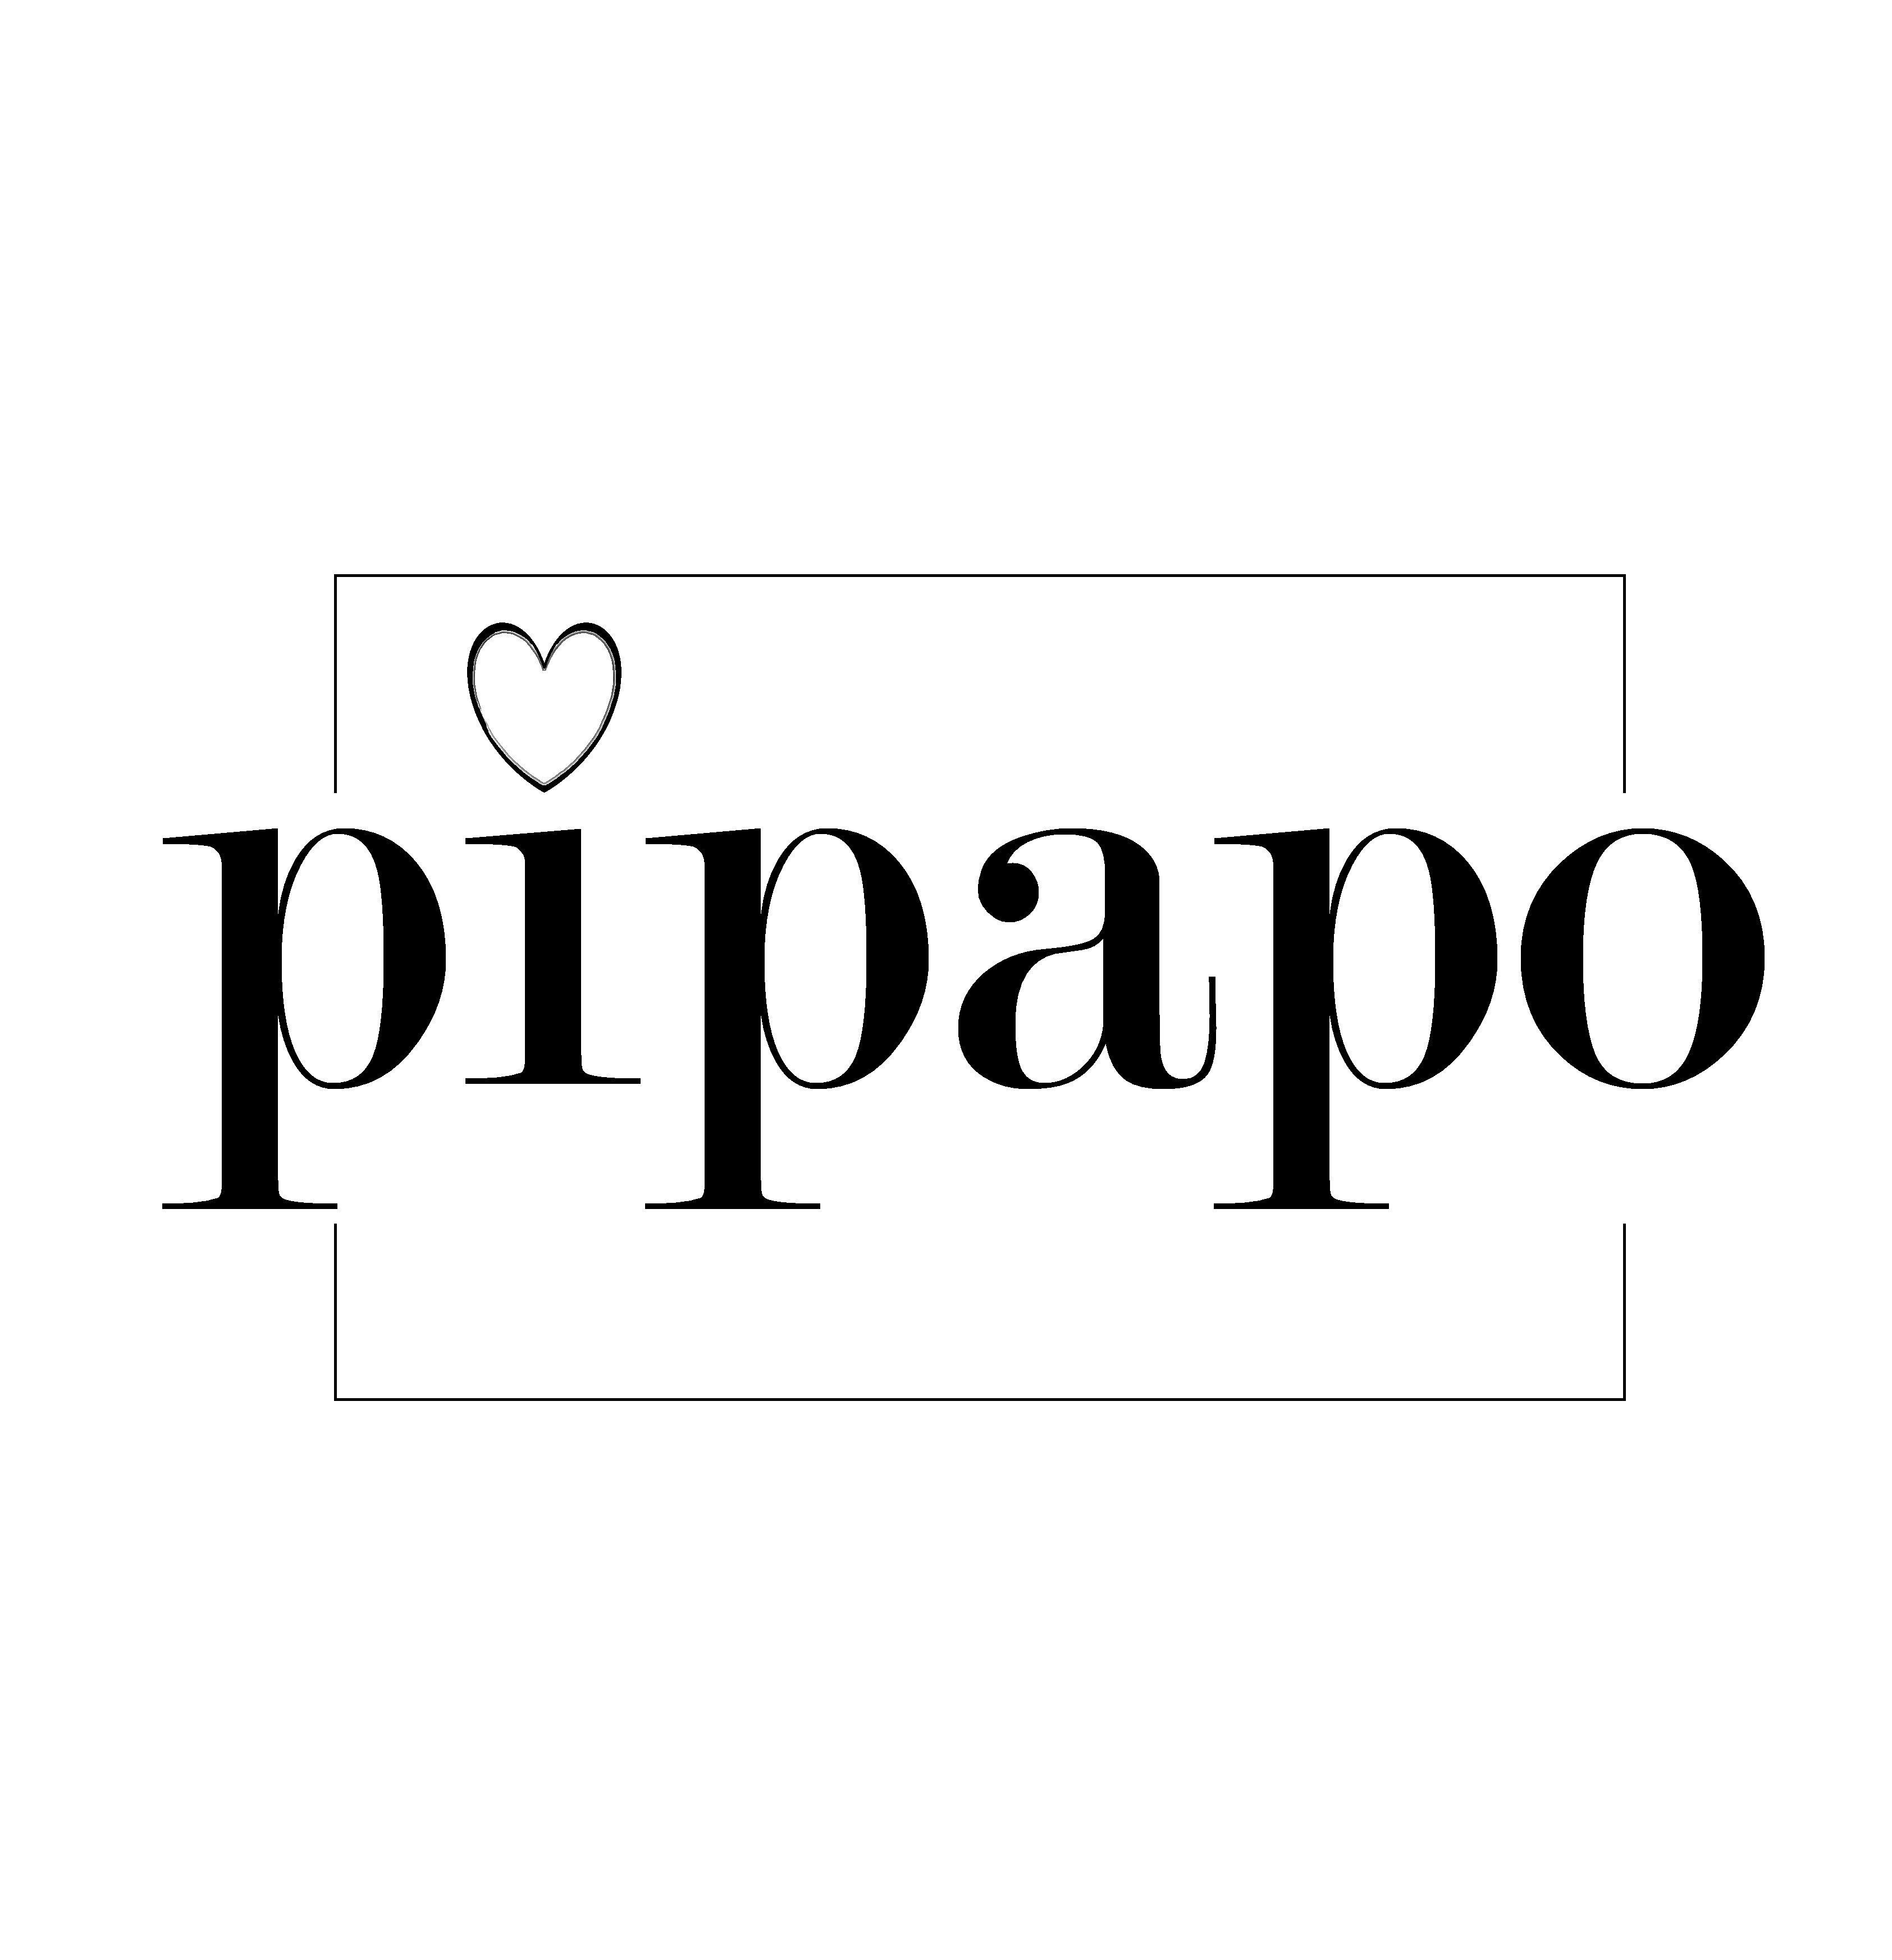 pipapo